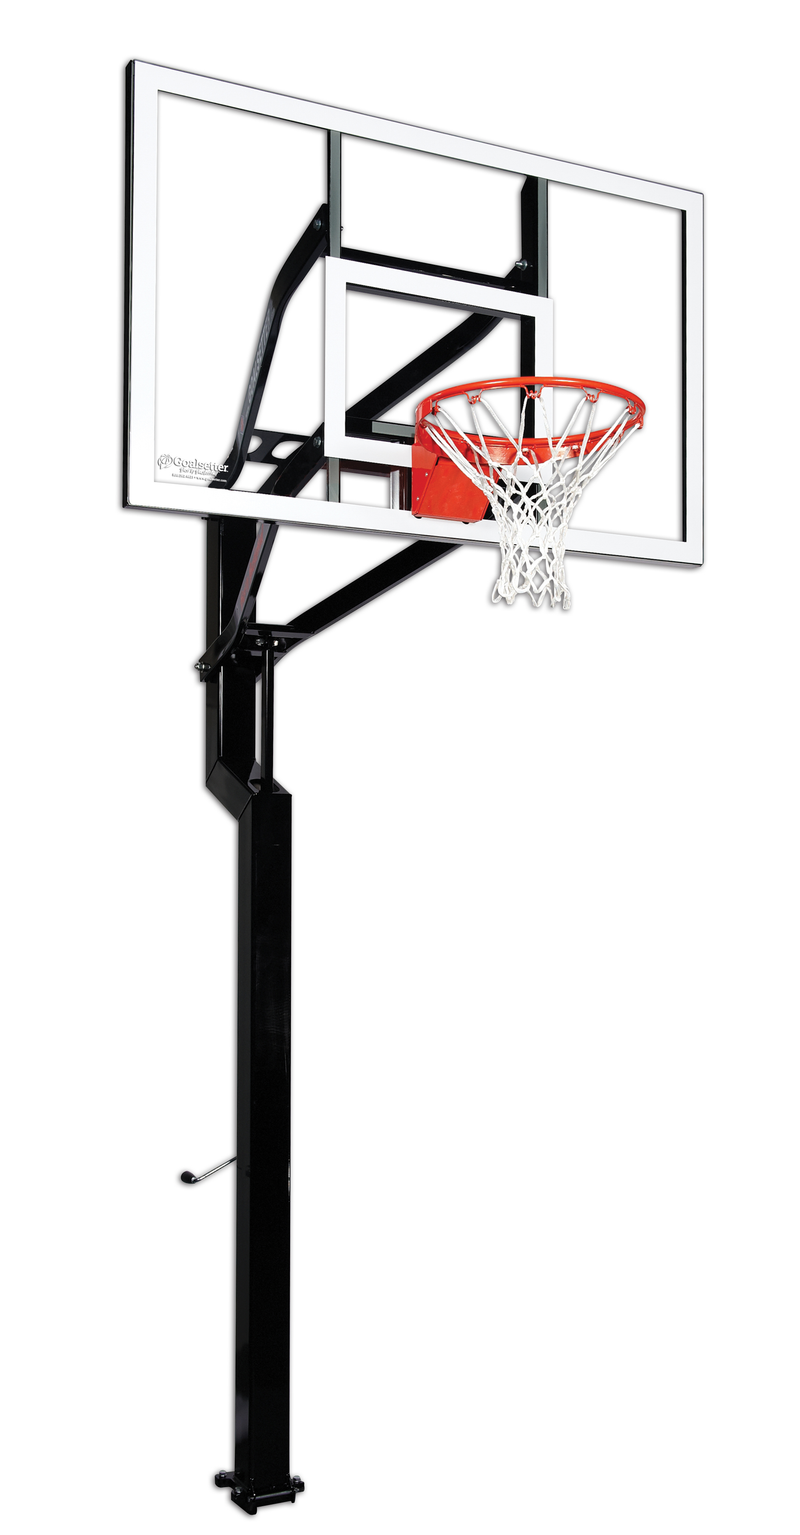 Goalsetter All-American - Internal Glass- Collegiate Breakaway Basketball Rim 60 inch backboard 